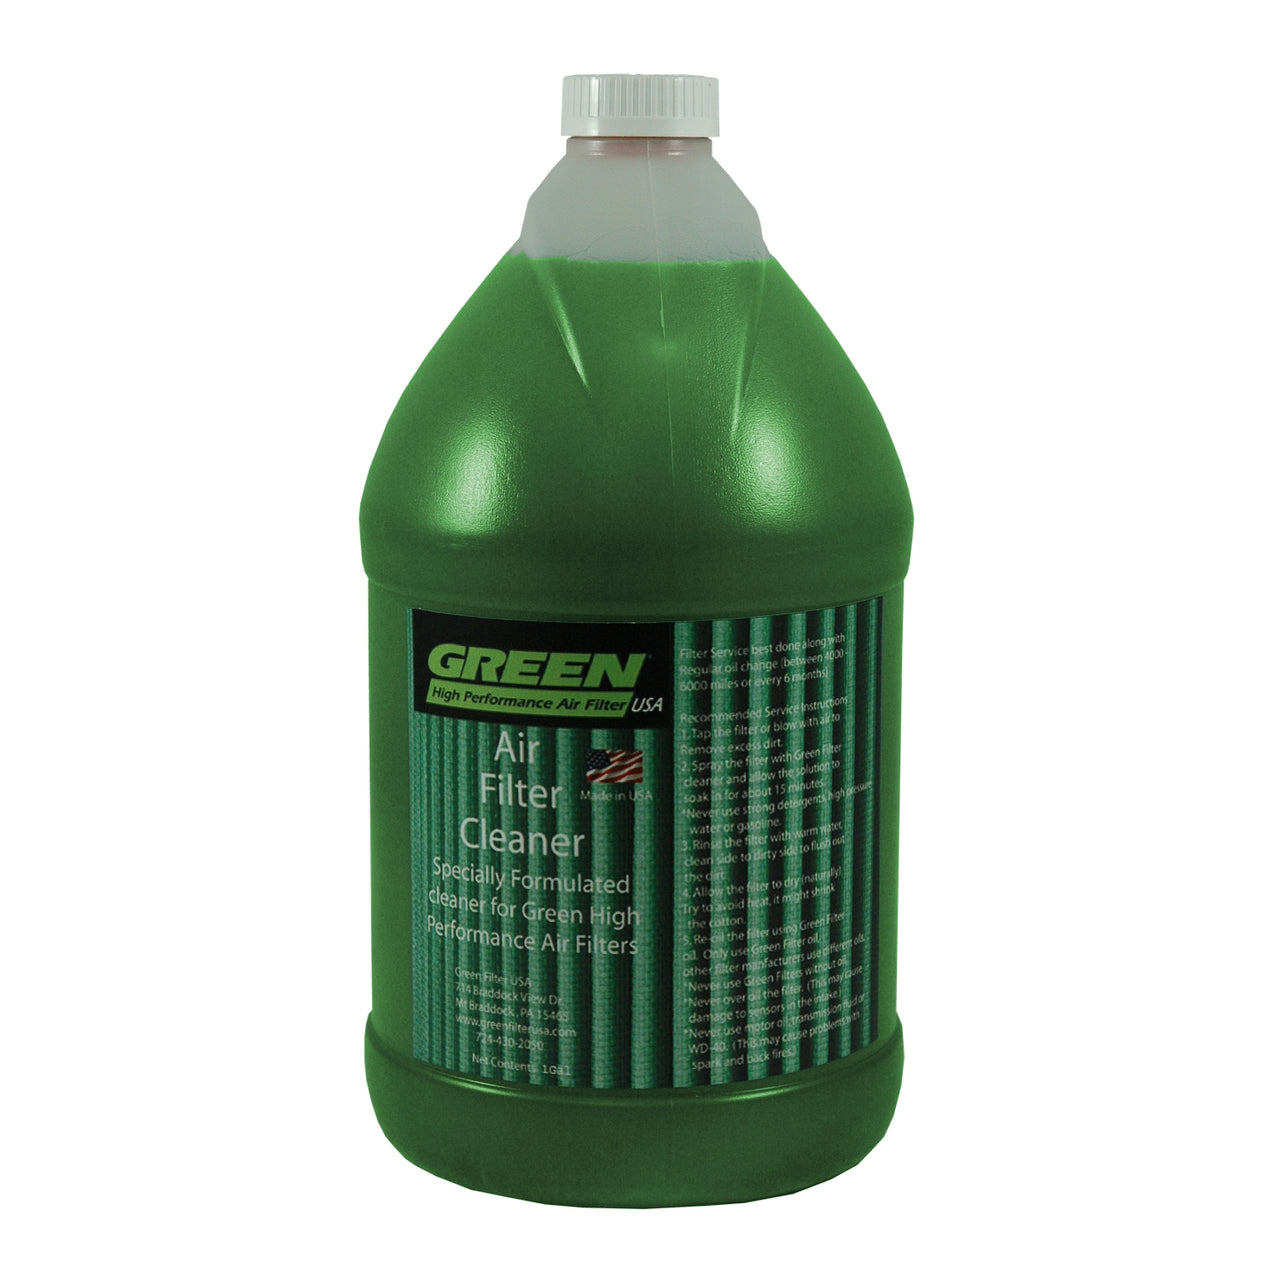 Green Filter Air Filter Cleaner - 1 Gal. Refill